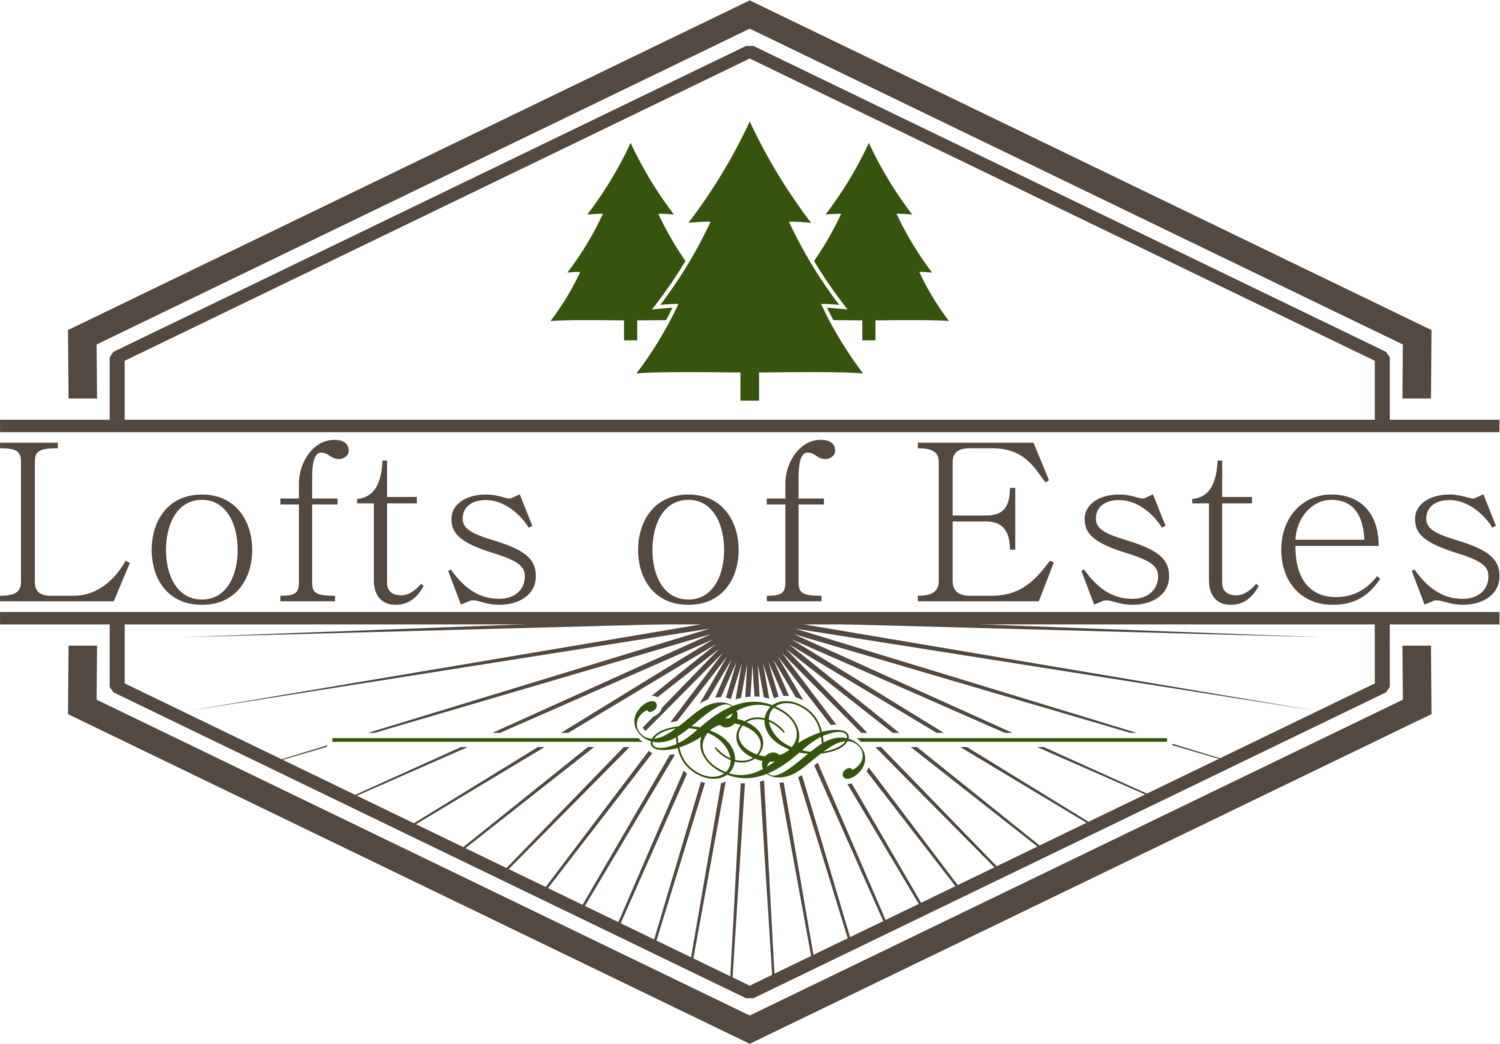 Lofts of Estes